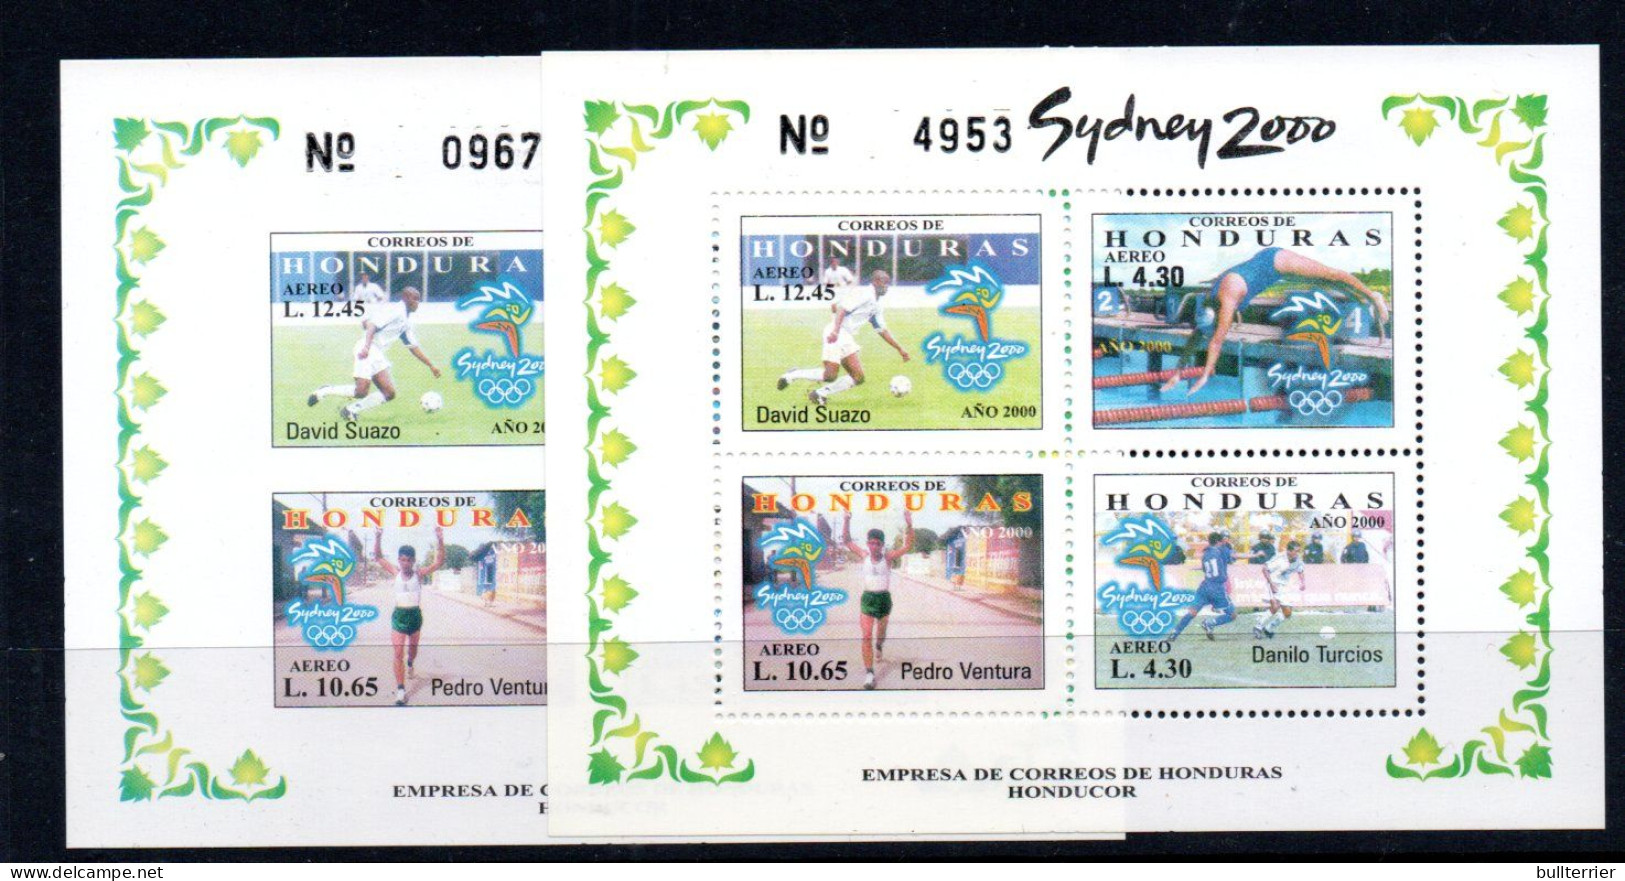 OLYMPICS - Honduras - 2000 - Sydney Olympics S/sheets Perf & Imperf MNH, - Ete 2000: Sydney